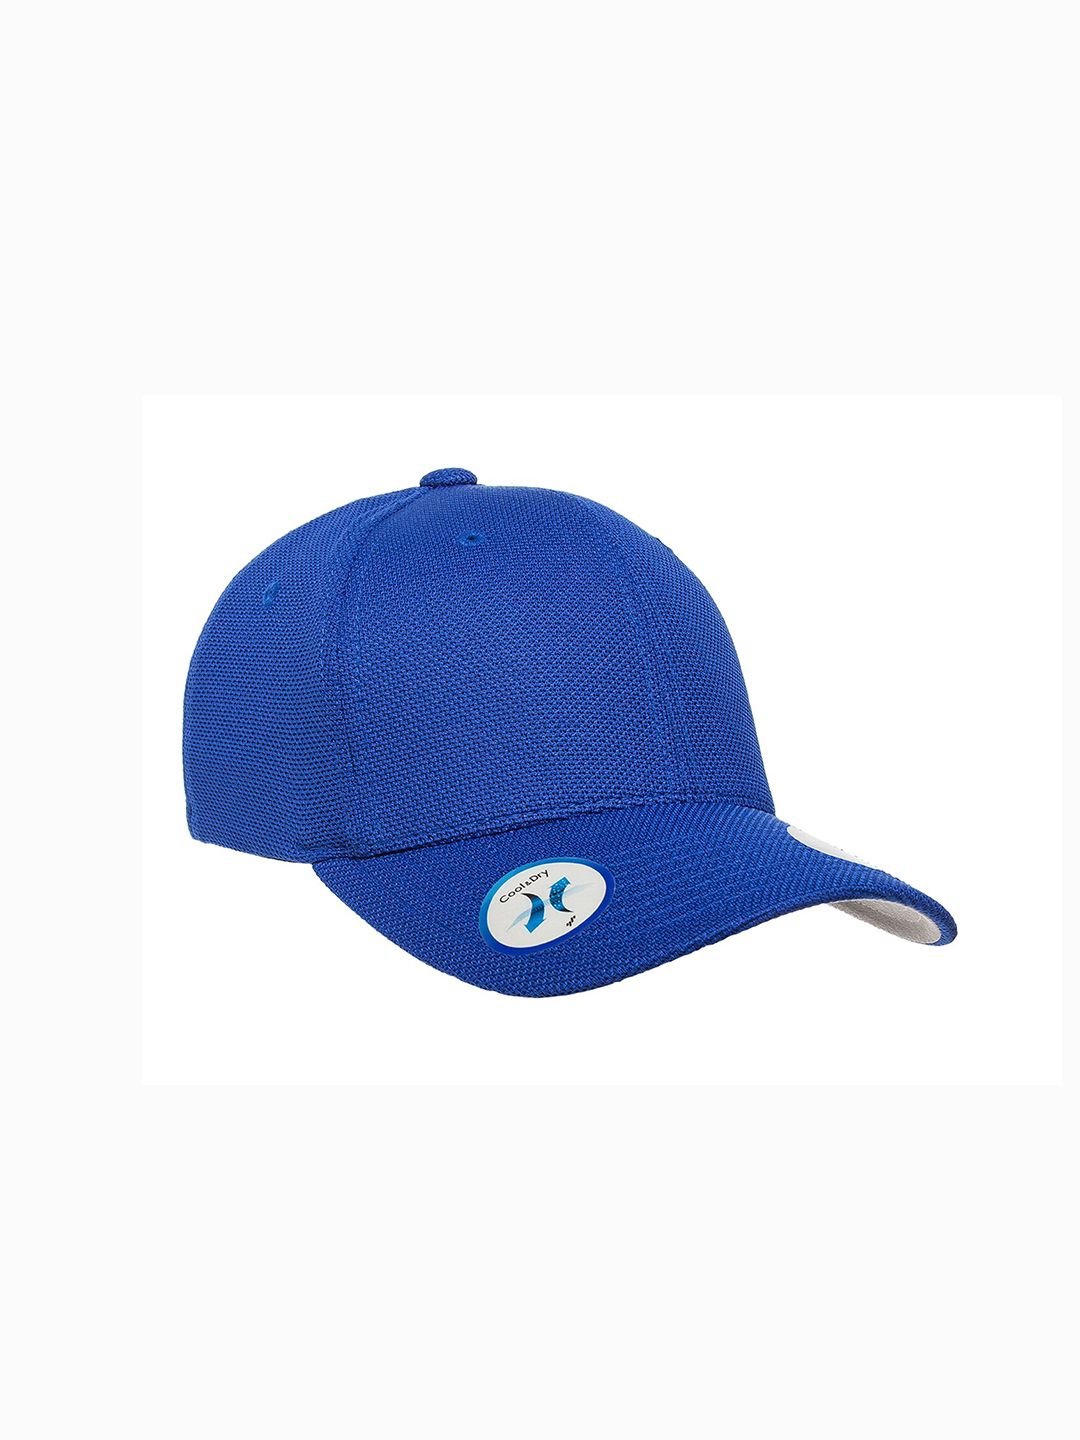 FLEXFIT Unisex Blue Baseball Cap Price in India